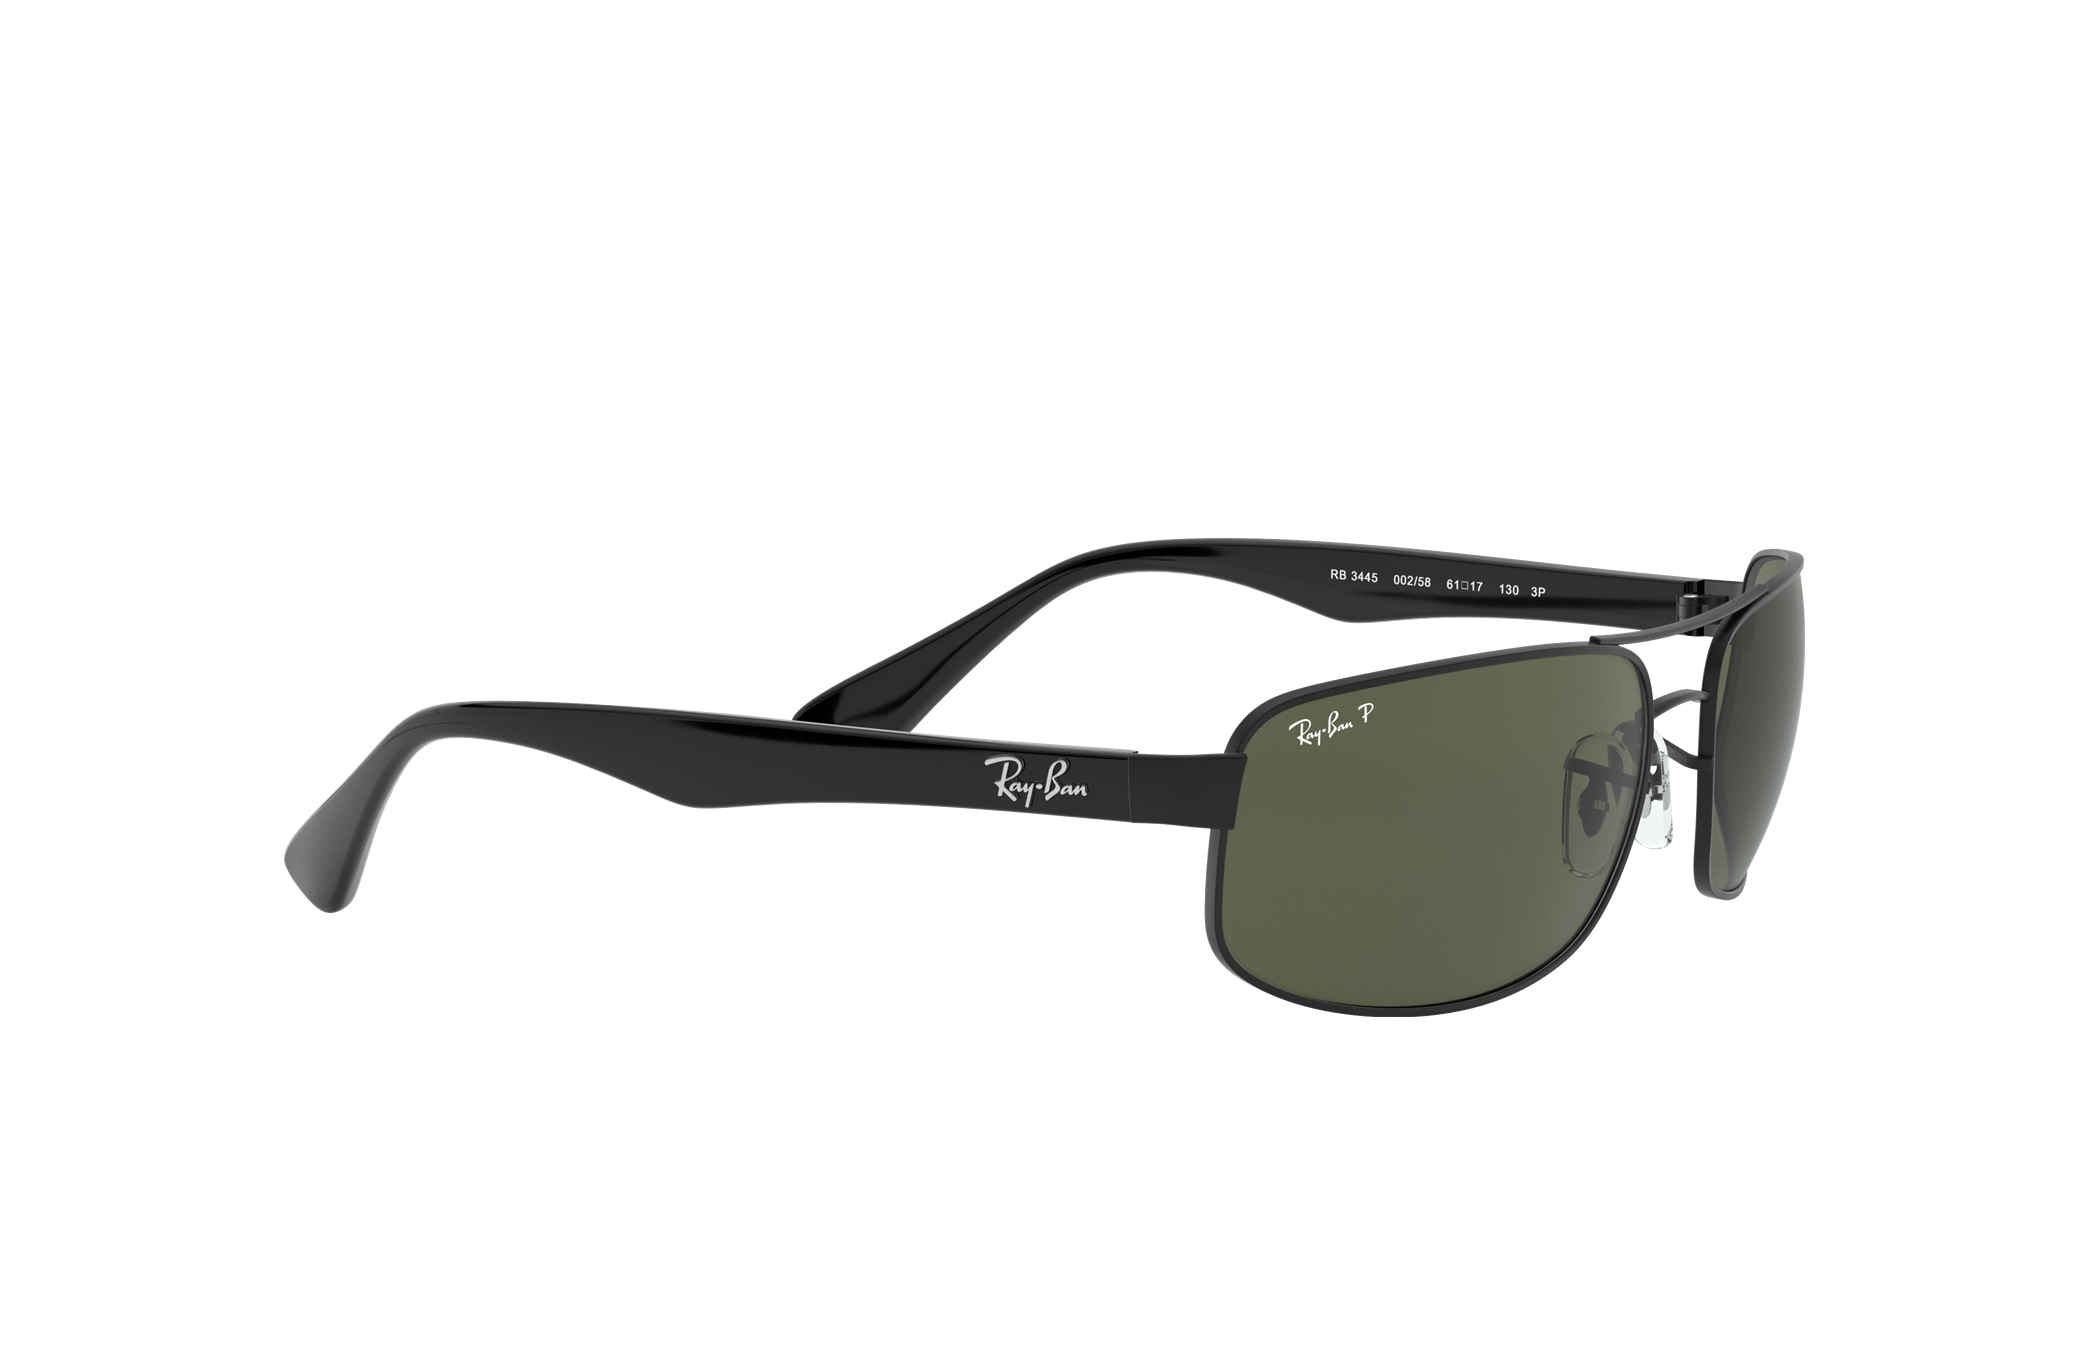 Accessoires Zonnebrillen & Eyewear Brillen Ray-Ban Zonnebril Frame Alleen RB 3445 004 Gunmetal/Mat Zwart Pilot 61 mm 